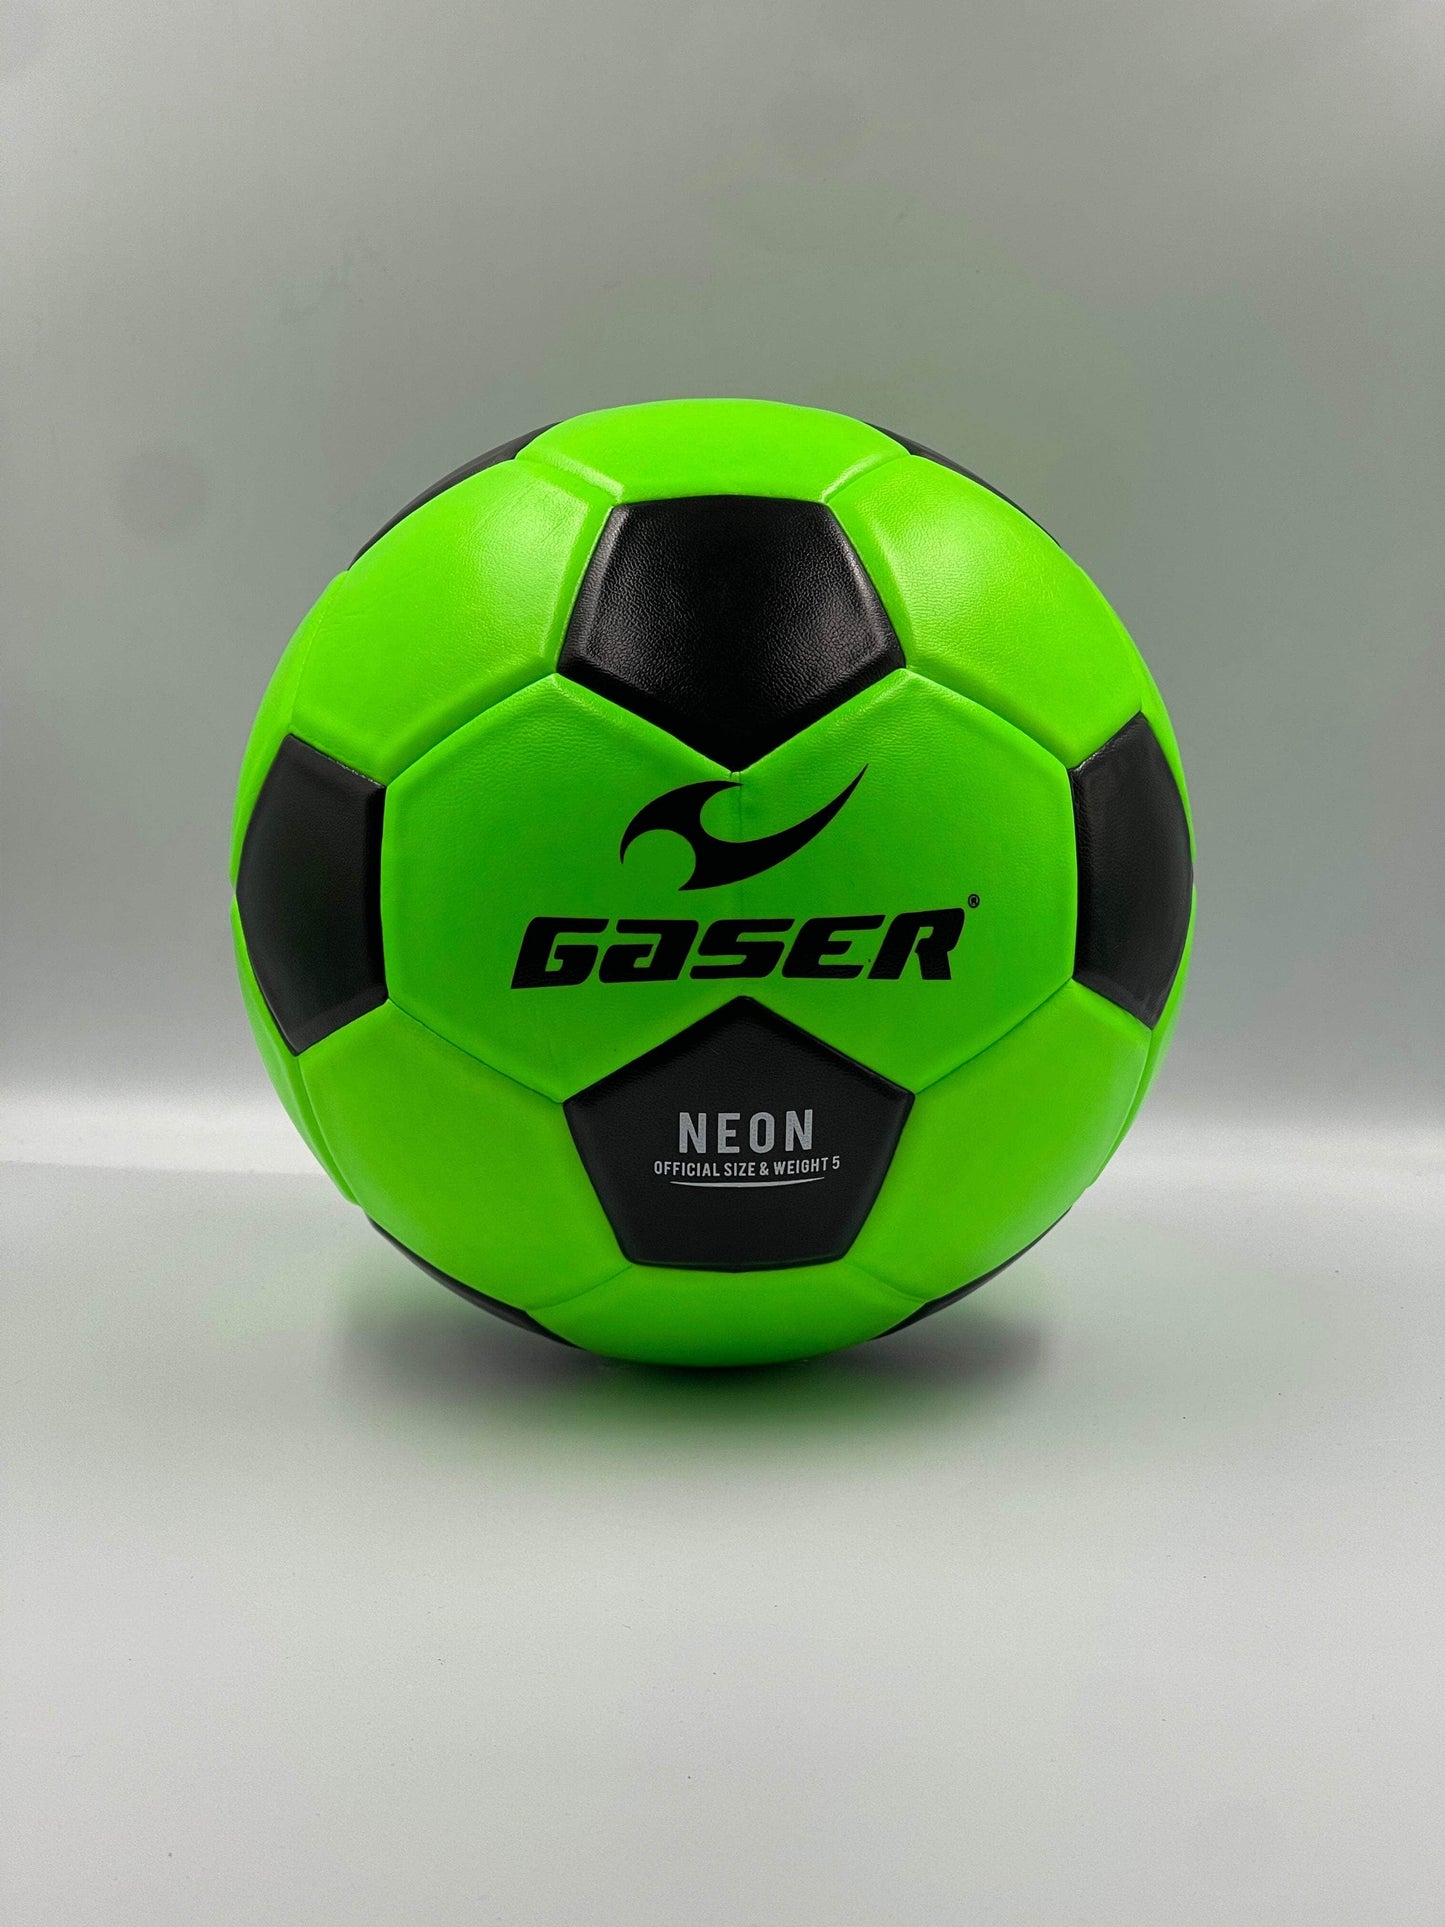 Gaser Balones 5 FOSFO VERDE- NEGRO Balon Neón Gaser Varios | Soccer Sport Mx | Tienda Deportiva 7503007211842 7503007211842